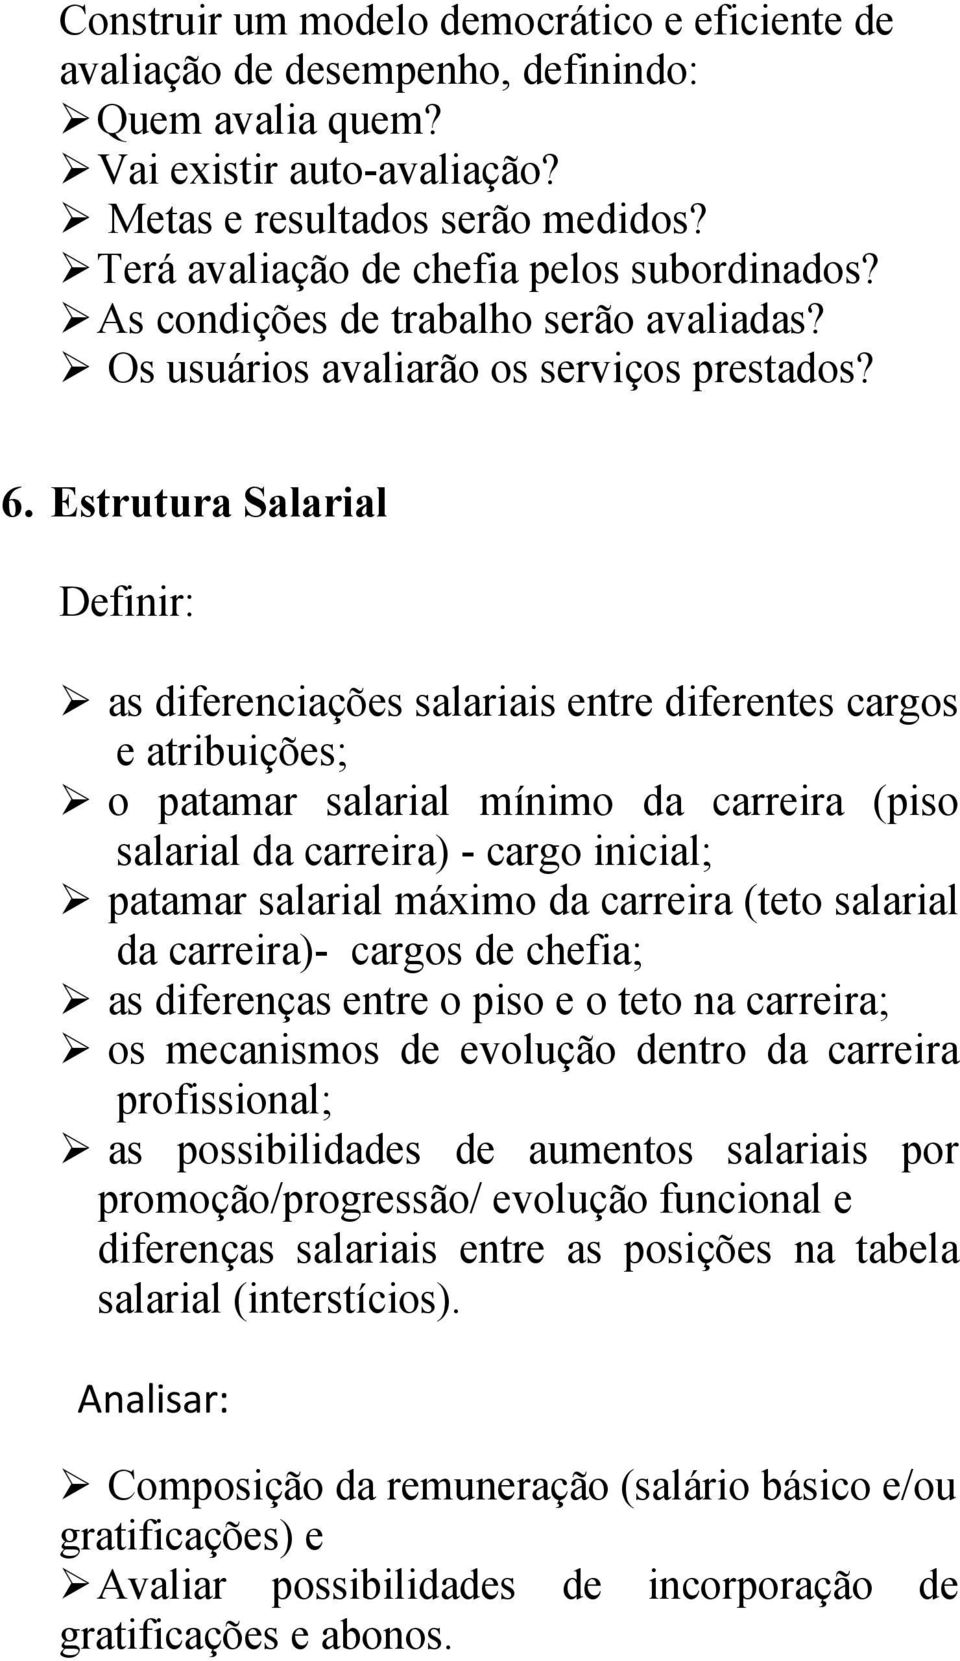 Estrutura Salarial Definir: as diferenciações salariais entre diferentes cargos e atribuições; o patamar salarial mínimo da carreira (piso salarial da carreira) - cargo inicial; patamar salarial